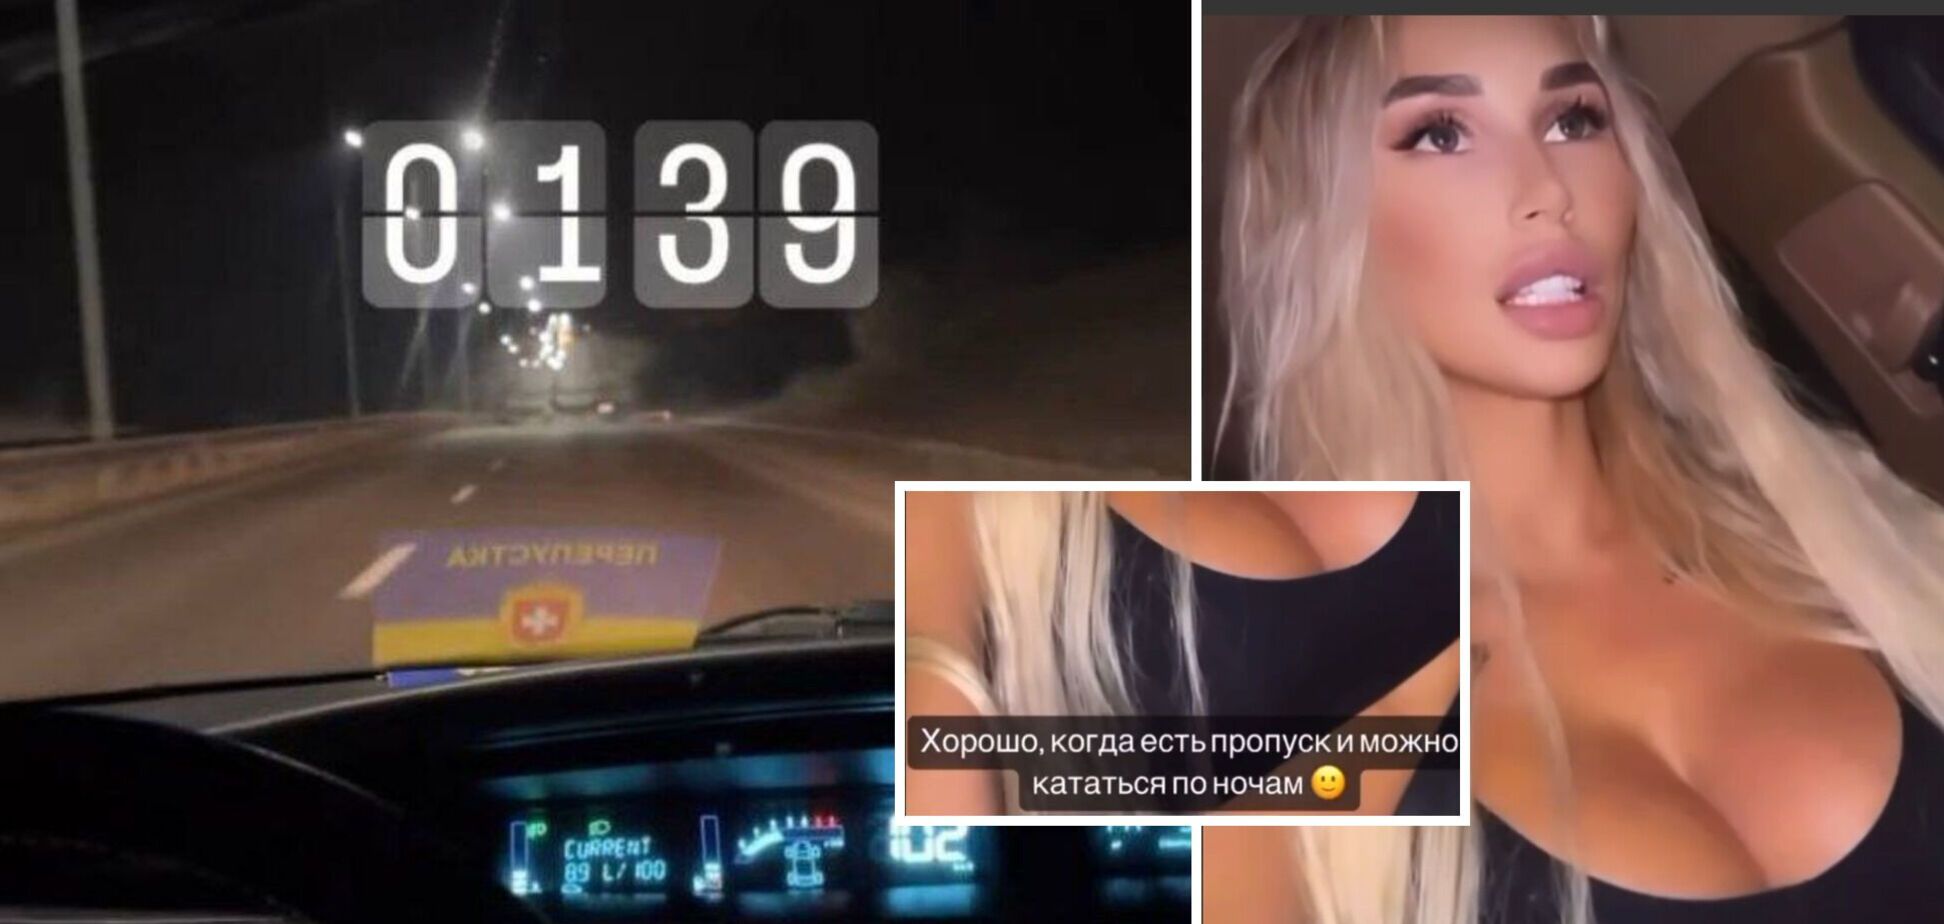 Дівчина яка опублікувала відео де нібито їздить вночі вулицями із спецперепусткою, пояснила ситуацію українською